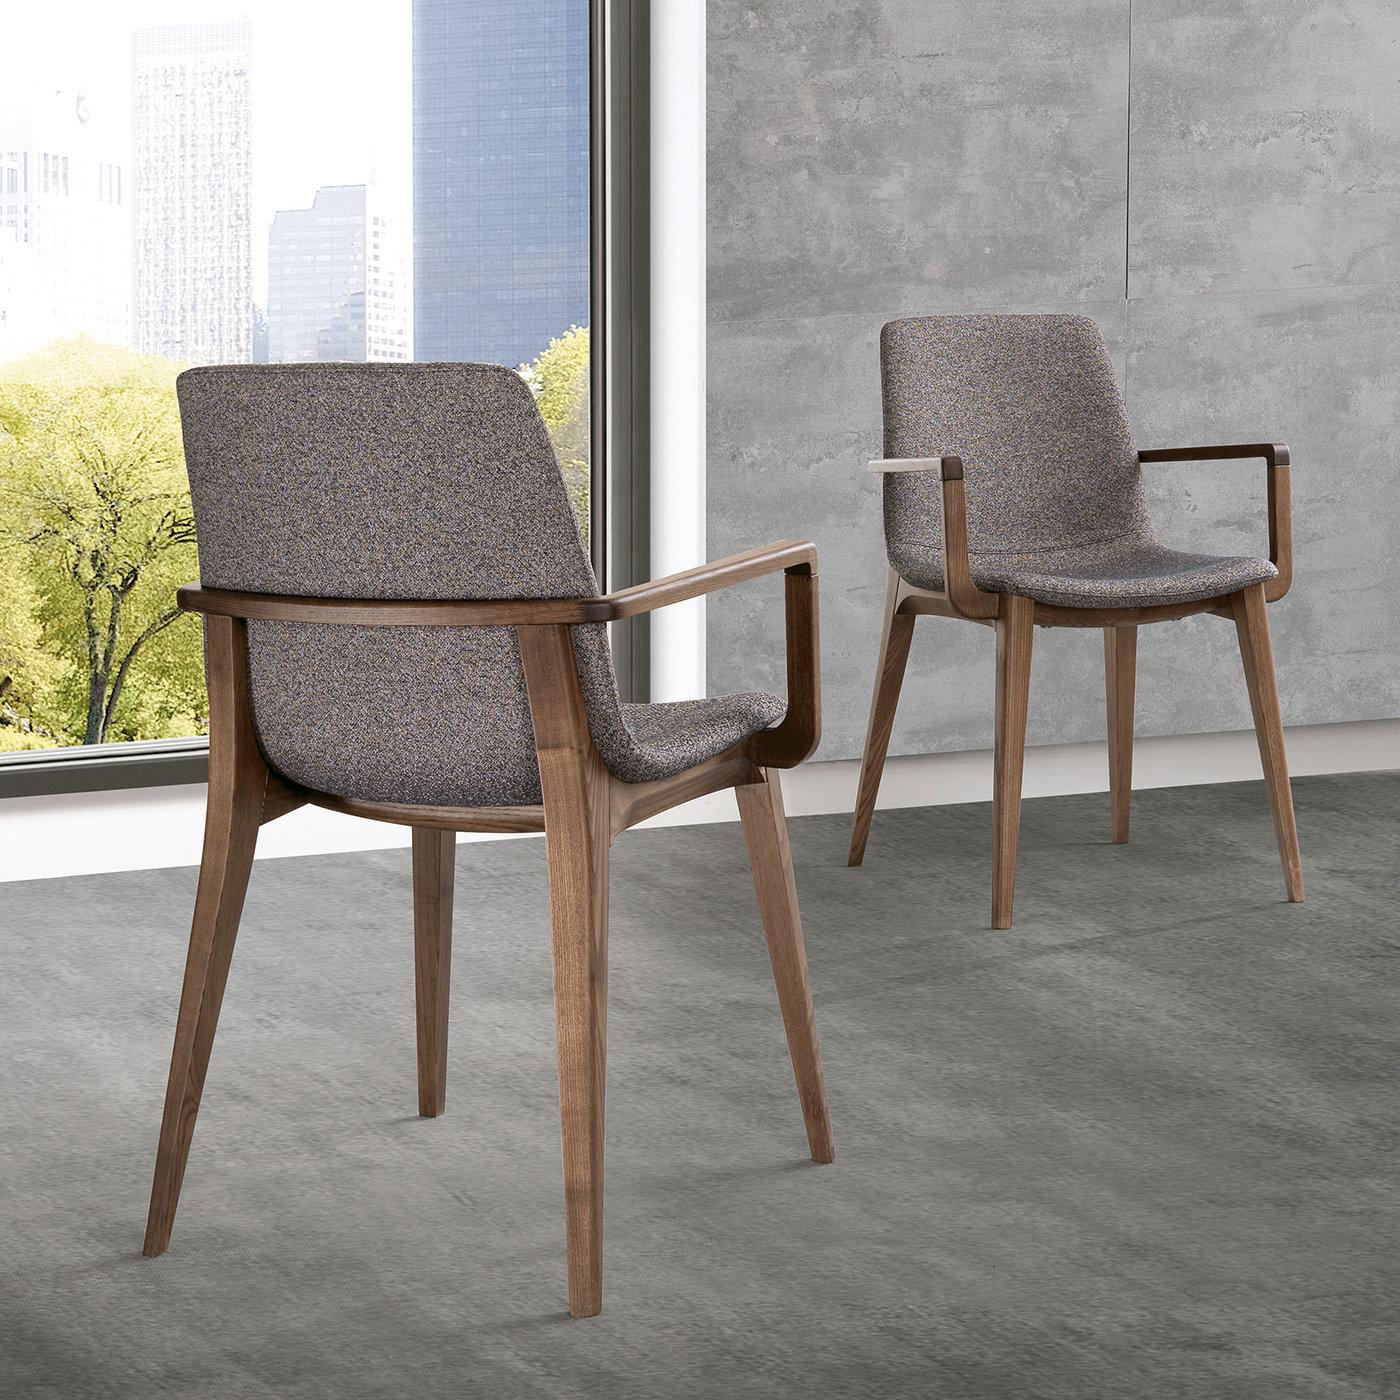 Faisant partie de la collection Ellen conçue par le studio interne de designers de Pacini & Cappellini, cette chaise sophistiquée sera le complément idéal d'une salle à manger moderne. Son cadre simple en frêne avec une teinte chaude de noyer